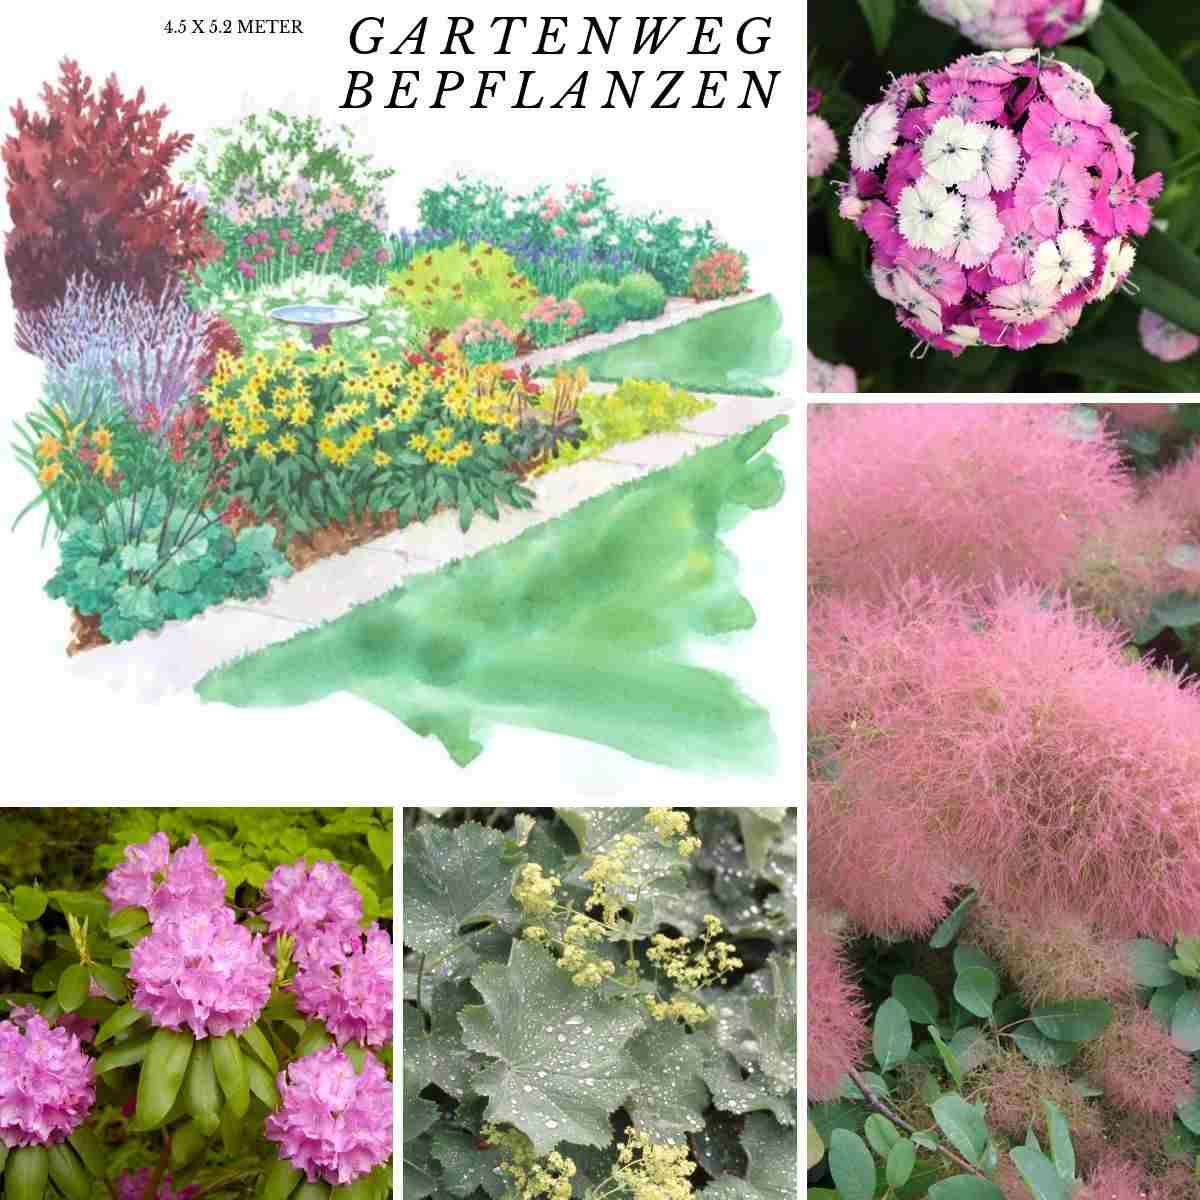 cottage garten pflanzen pflanzplan immergrüner rhododendron färbesummach frauenmantel